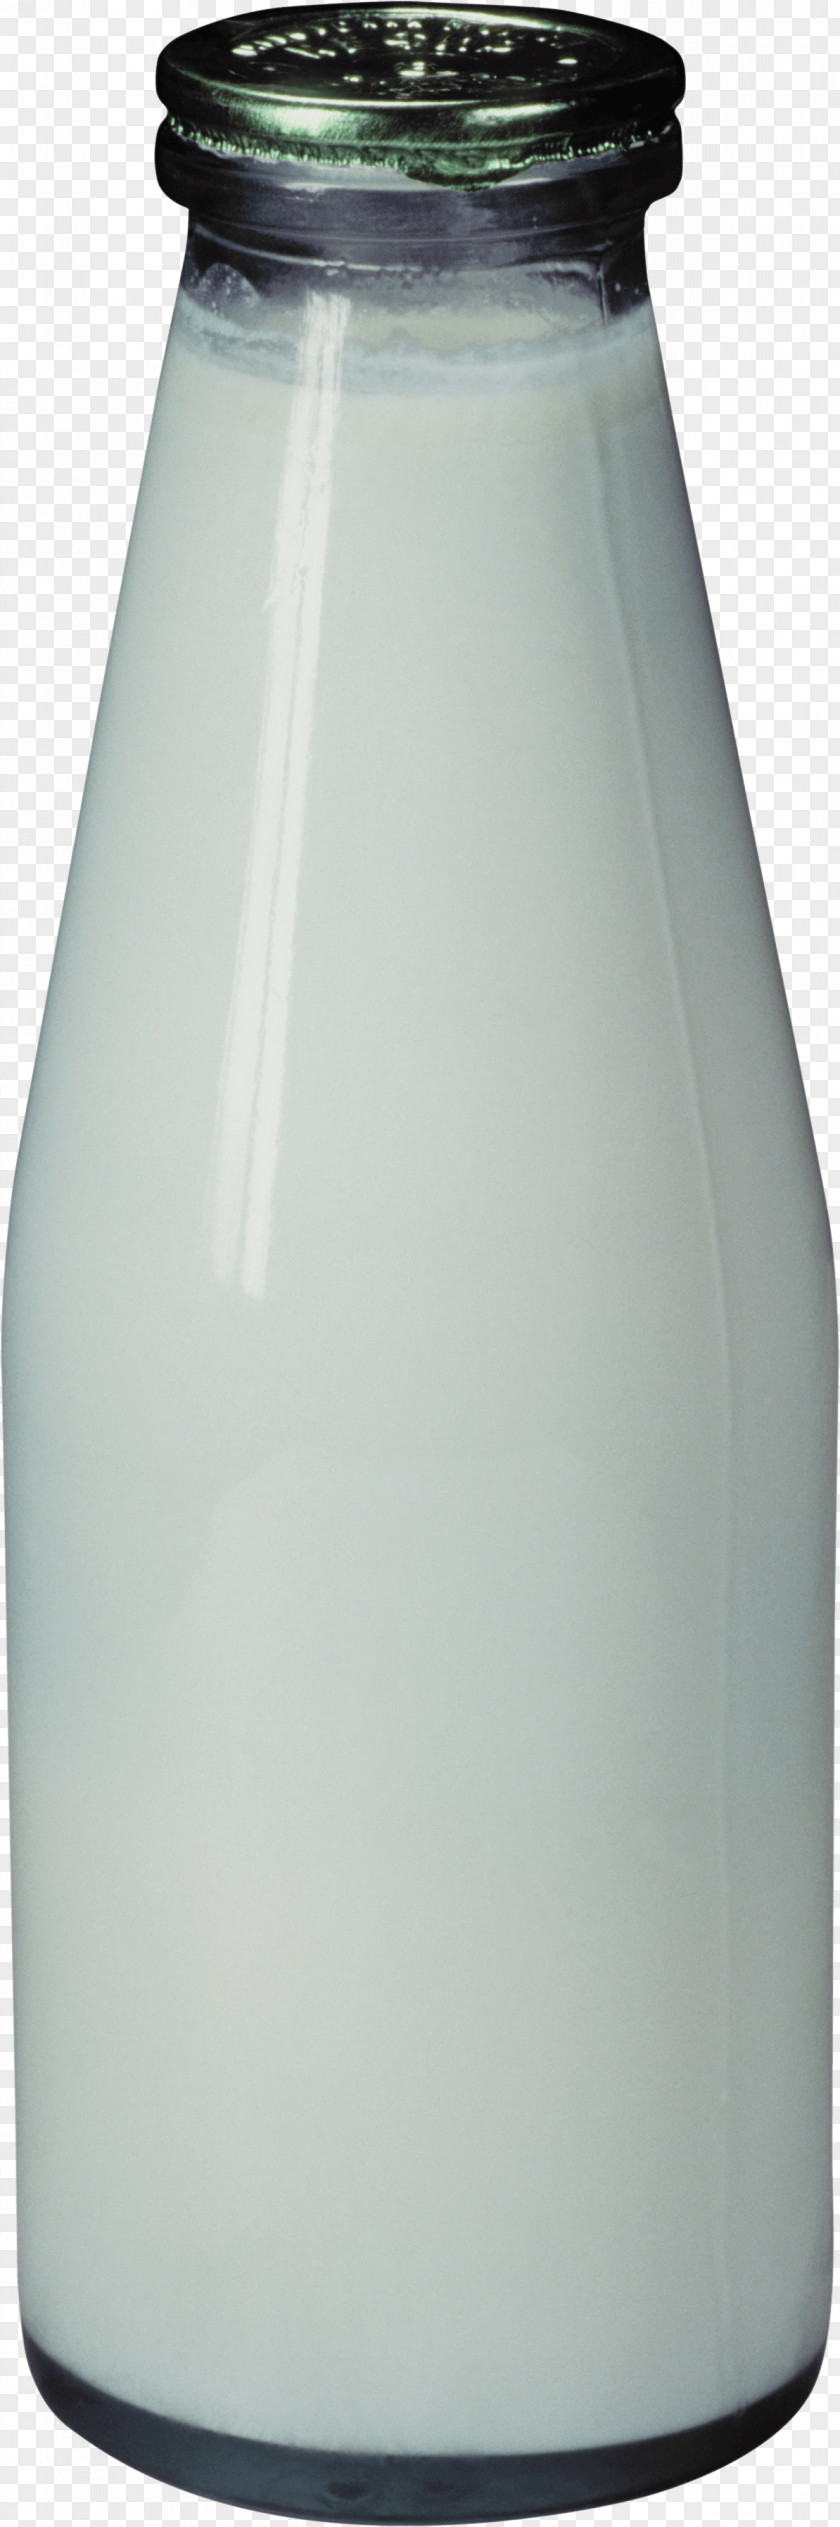 Kefir Bottle Glass Milk PNG